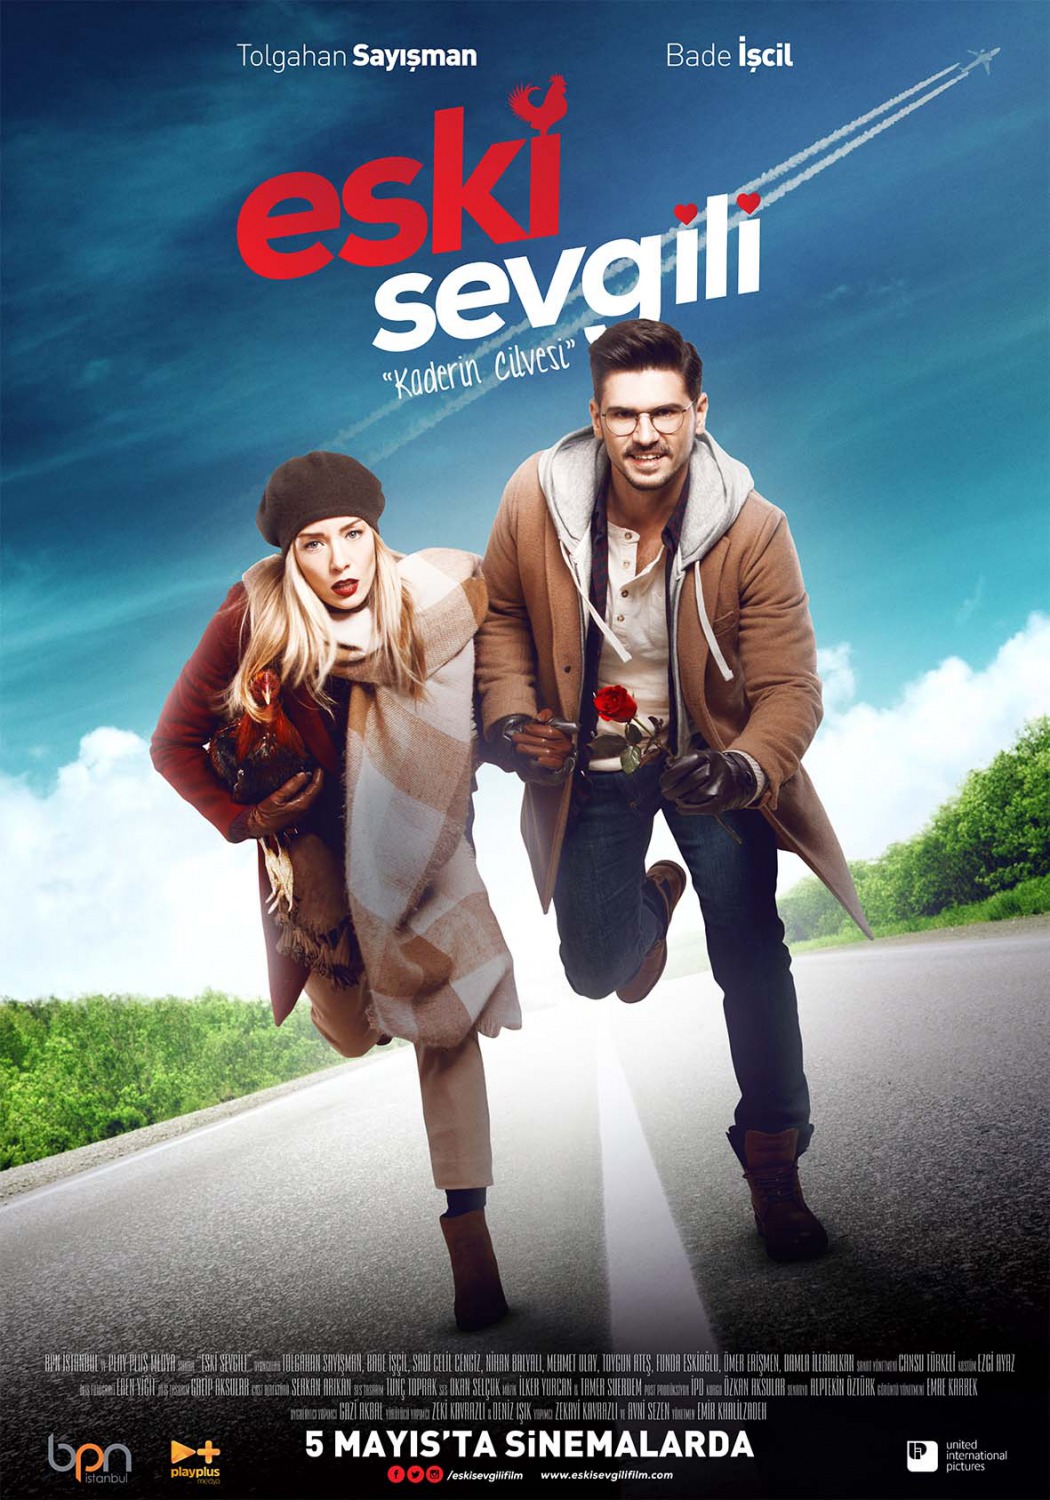 Extra Large Movie Poster Image for Eski Sevgili (#4 of 4)